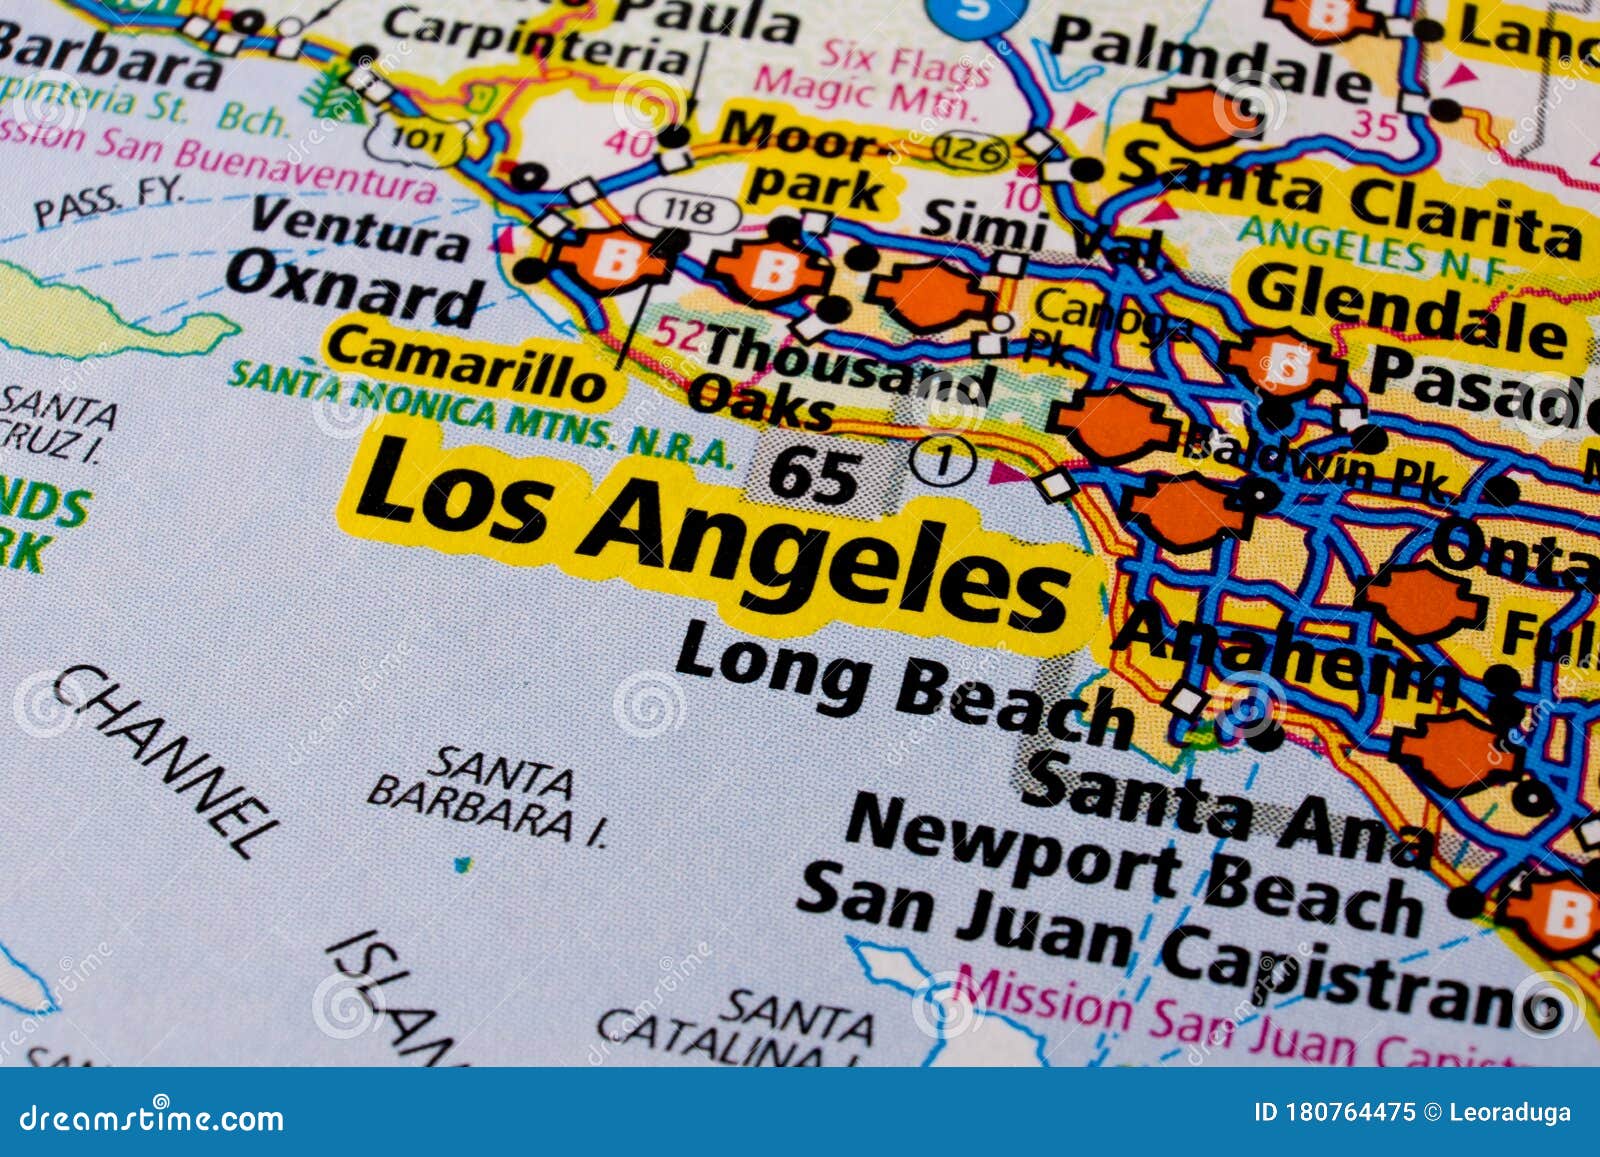 Mapa De Viajes De La Ciudad De Los Angeles En Estados Unidos Imagen De